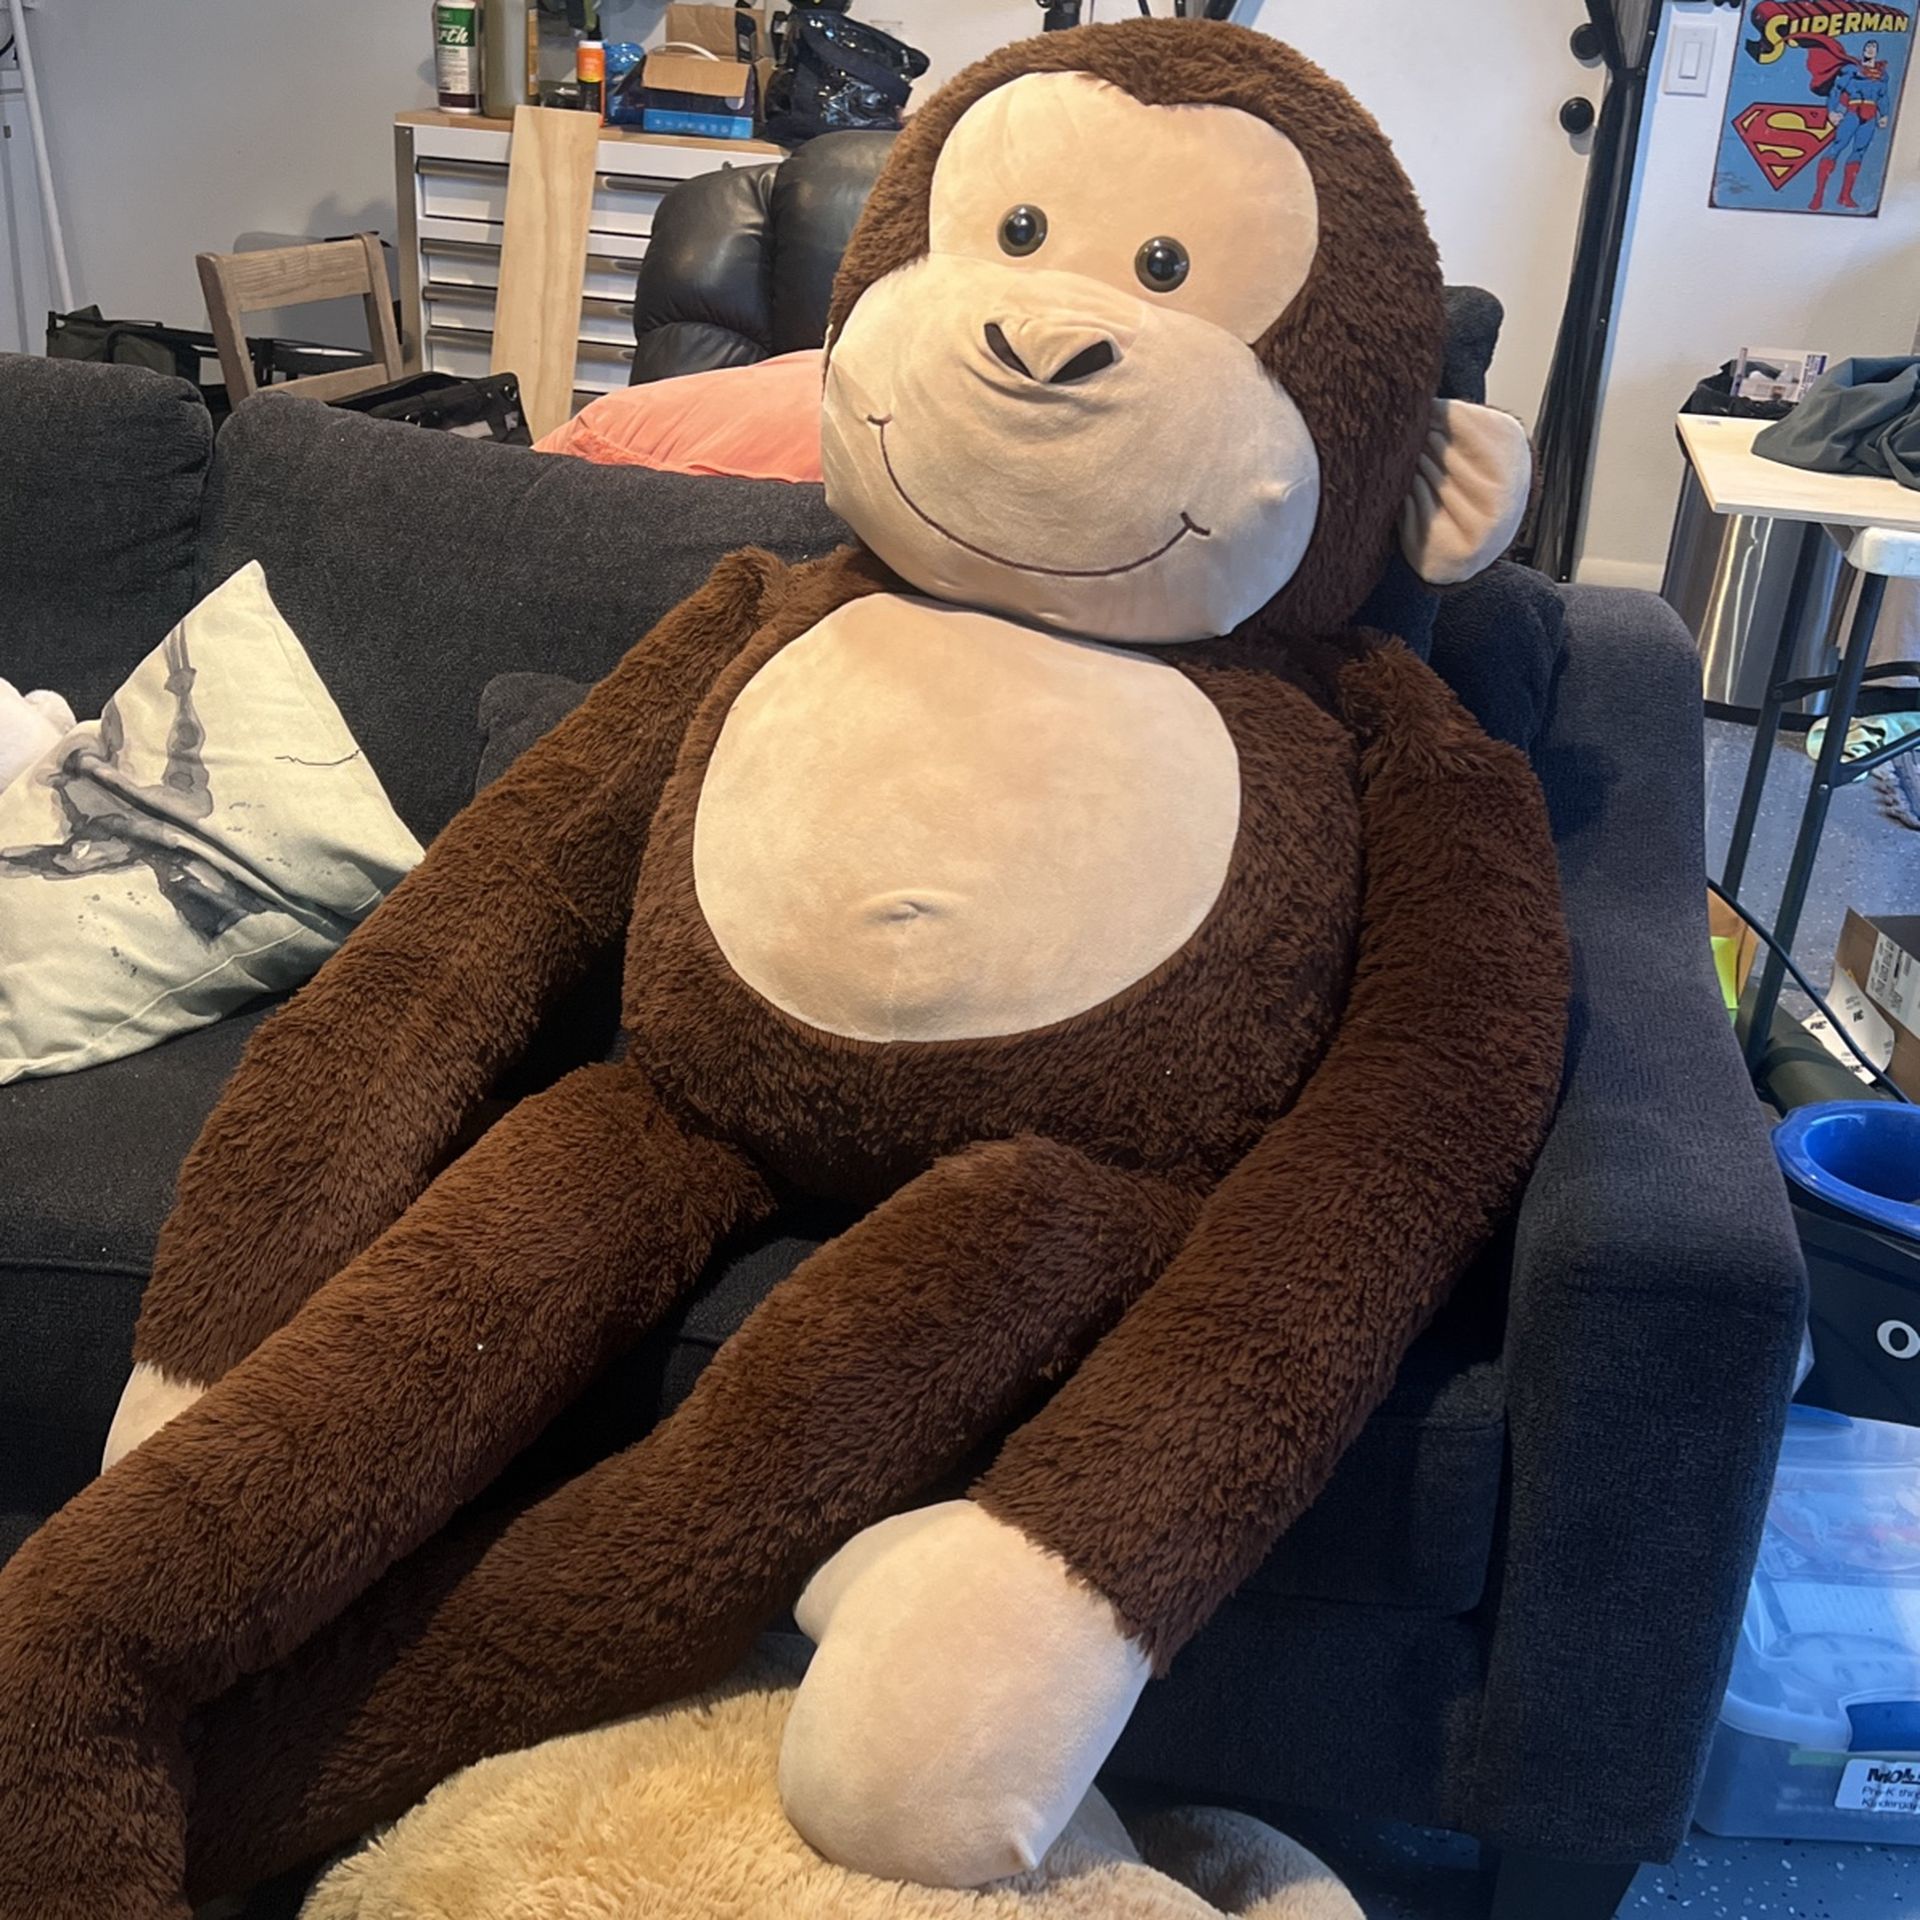 Giant monkey stuffed animal